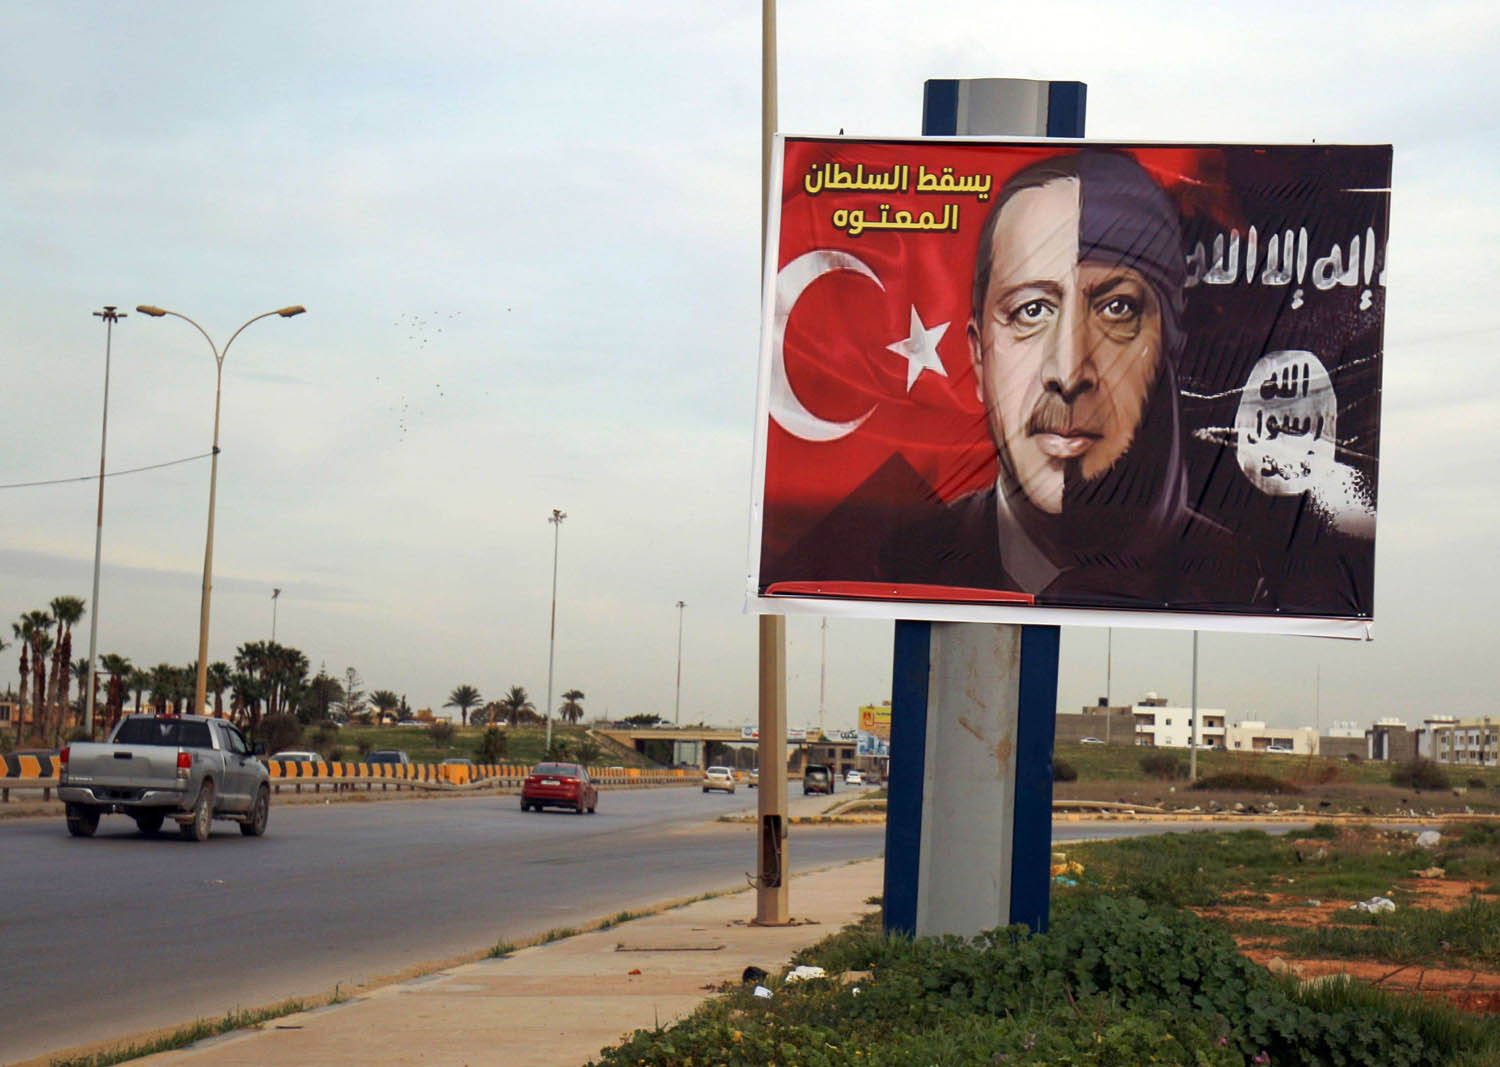 لوحة اعلانية في بنغازي عن الرئيس التركي أردوغان